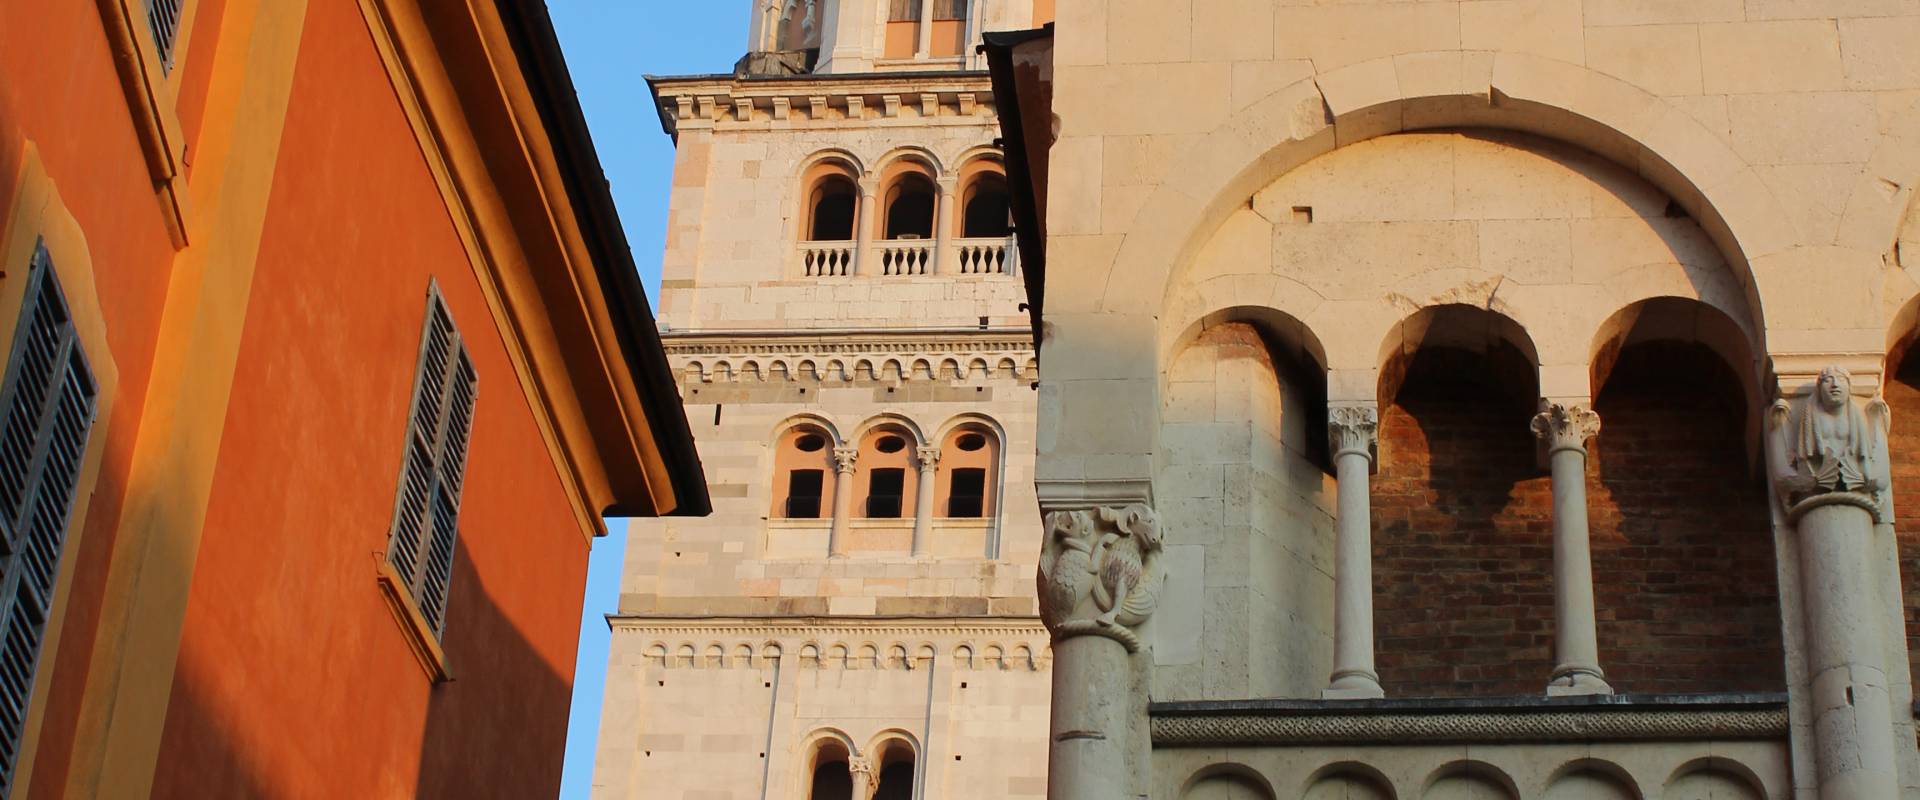 Torre Campanaria di Modena foto di BeaDominianni